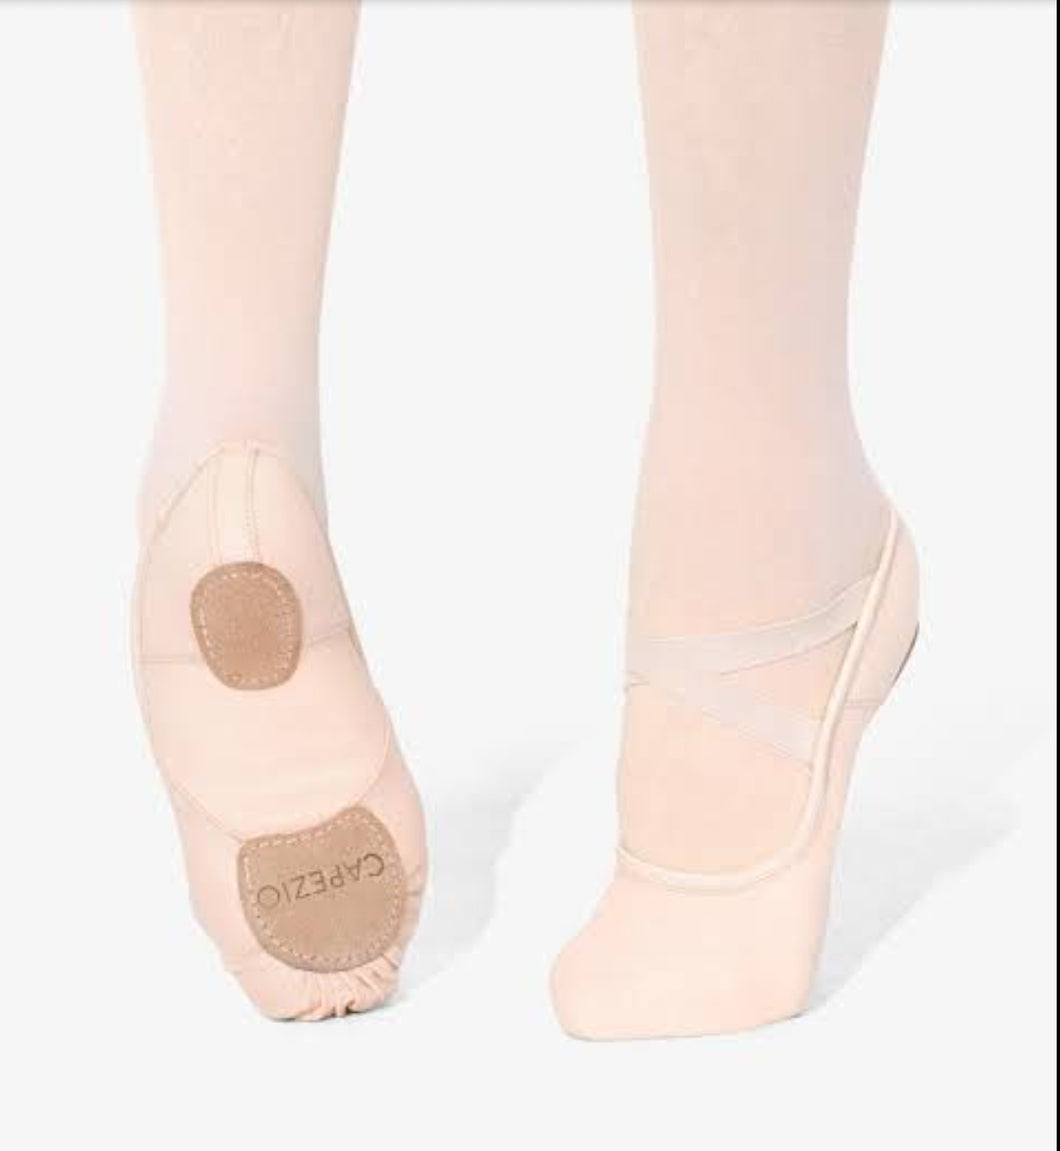 Hanami Leather Ballet Shoe with Flex Arch